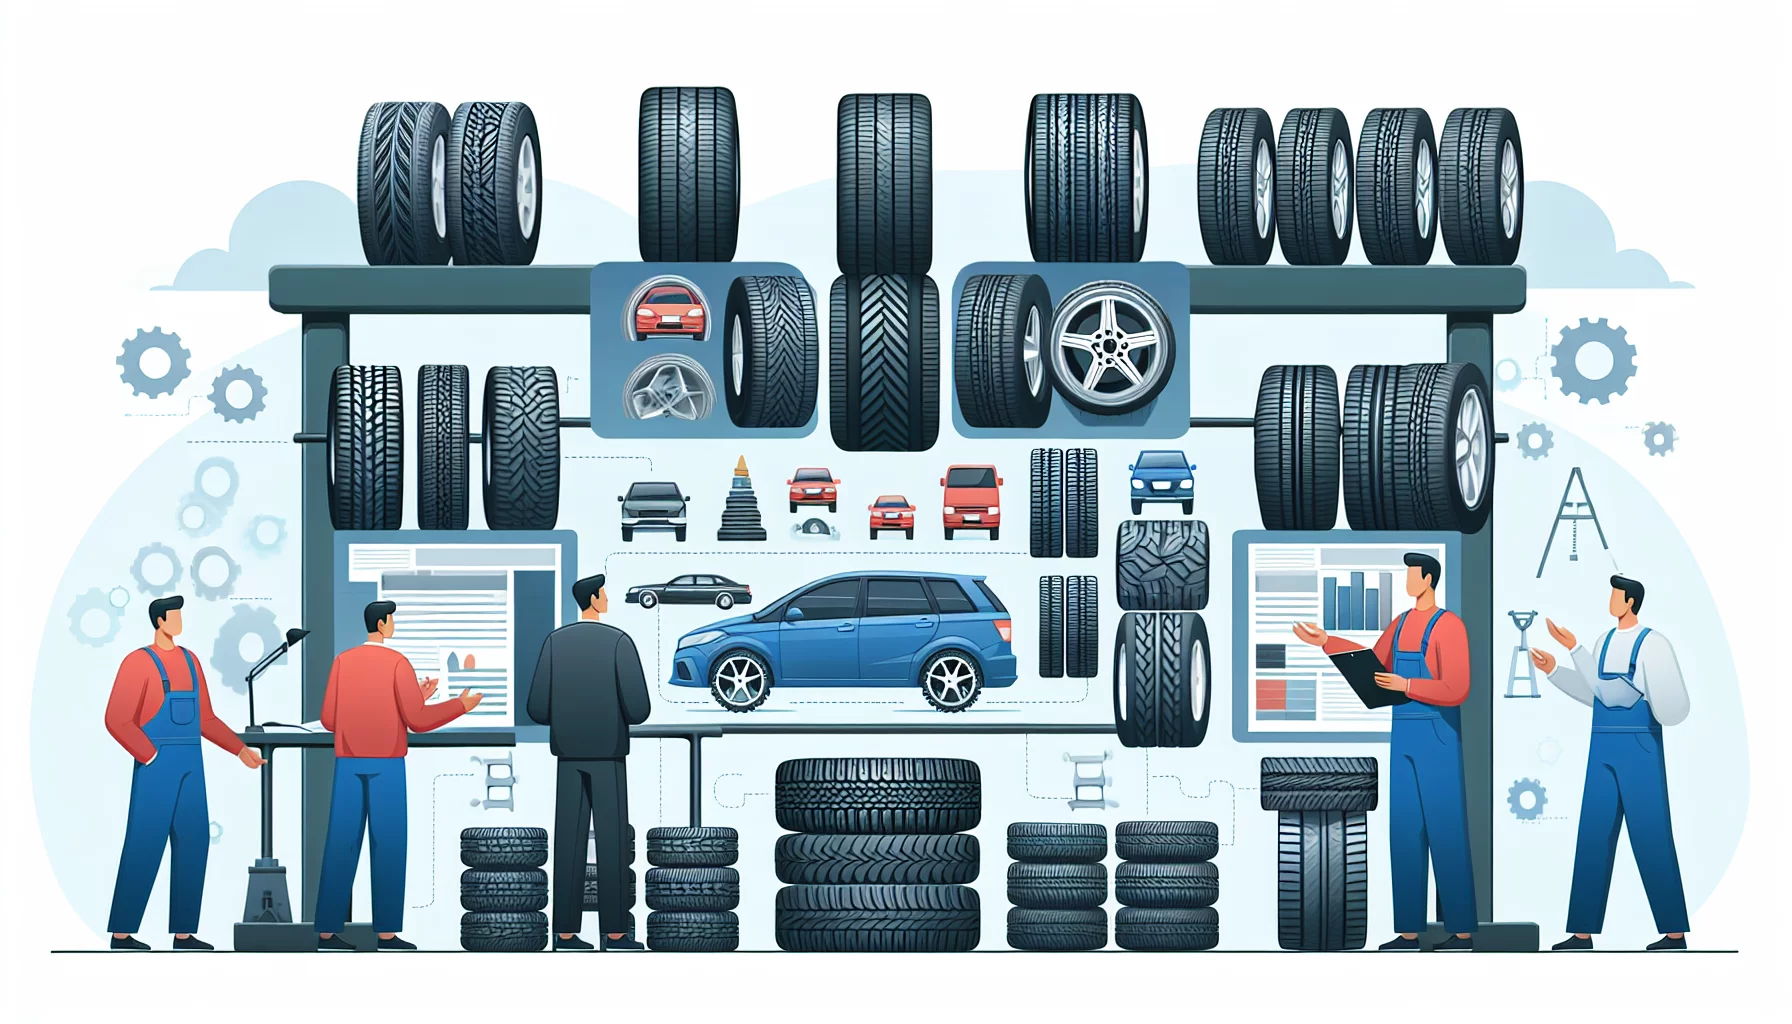 Comment faire pour choisir les meilleurs pneus pour votre véhicule